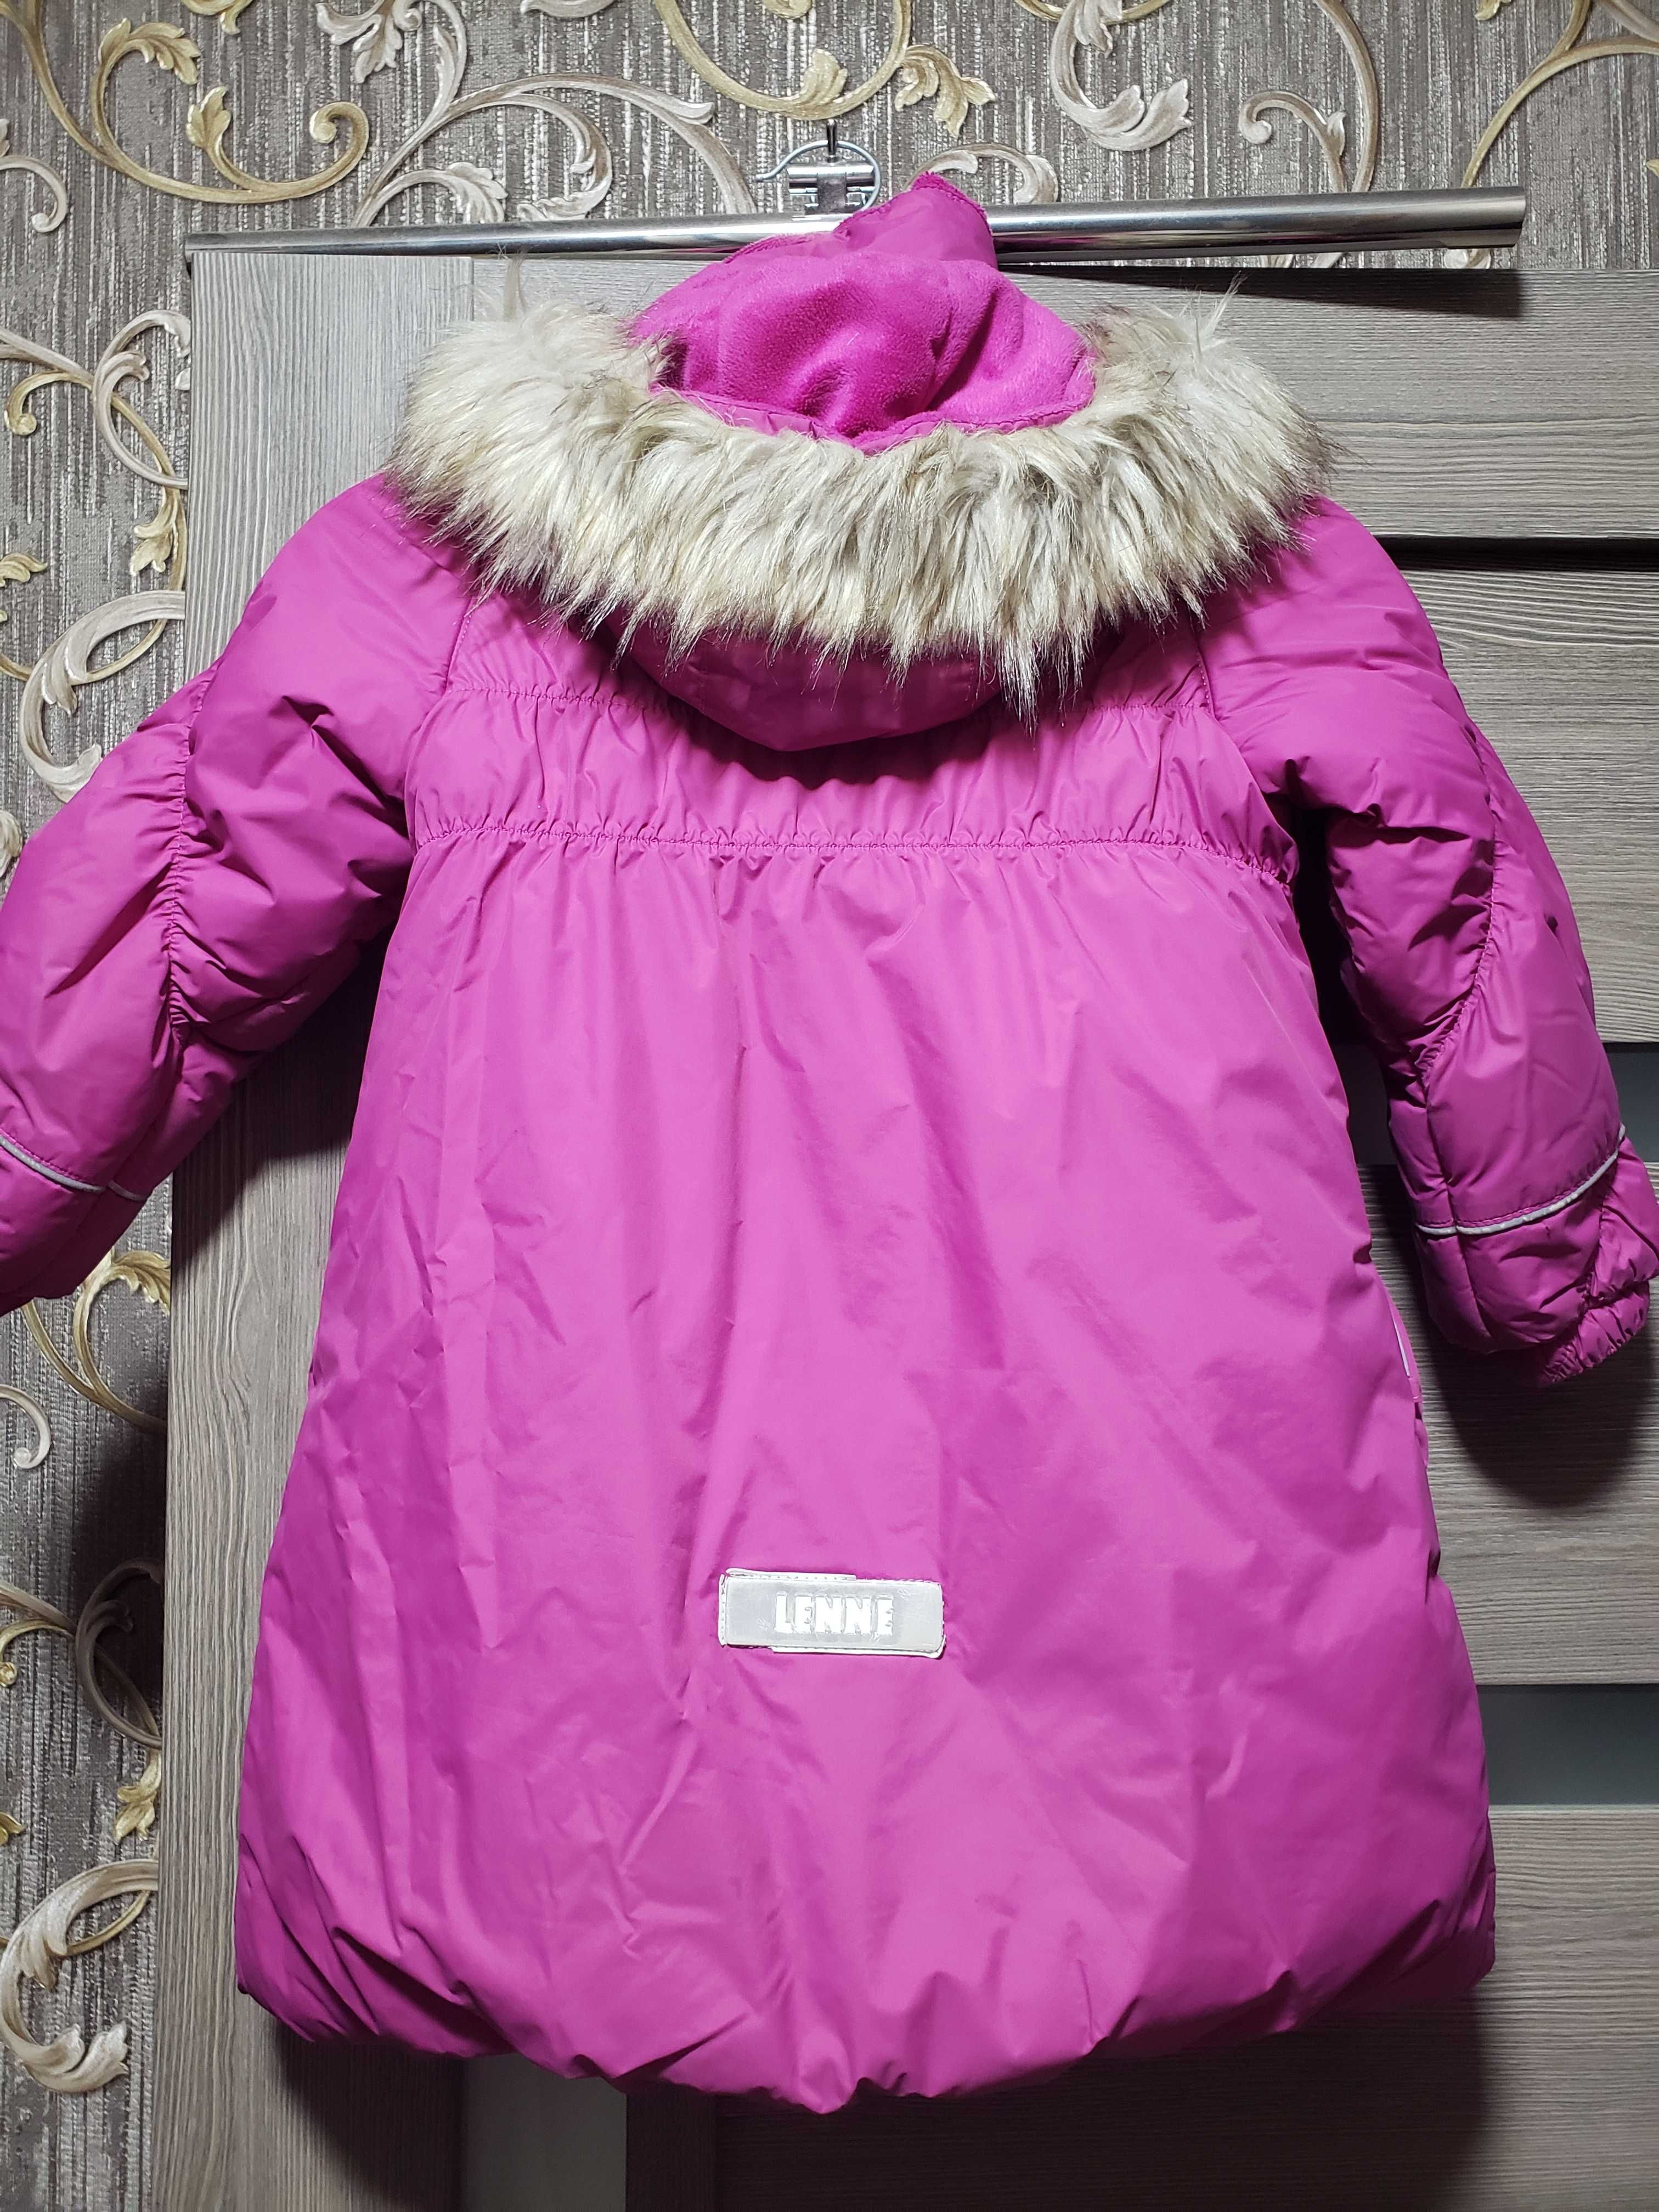 Зимнее пальто Lenne, размер 104, девочка